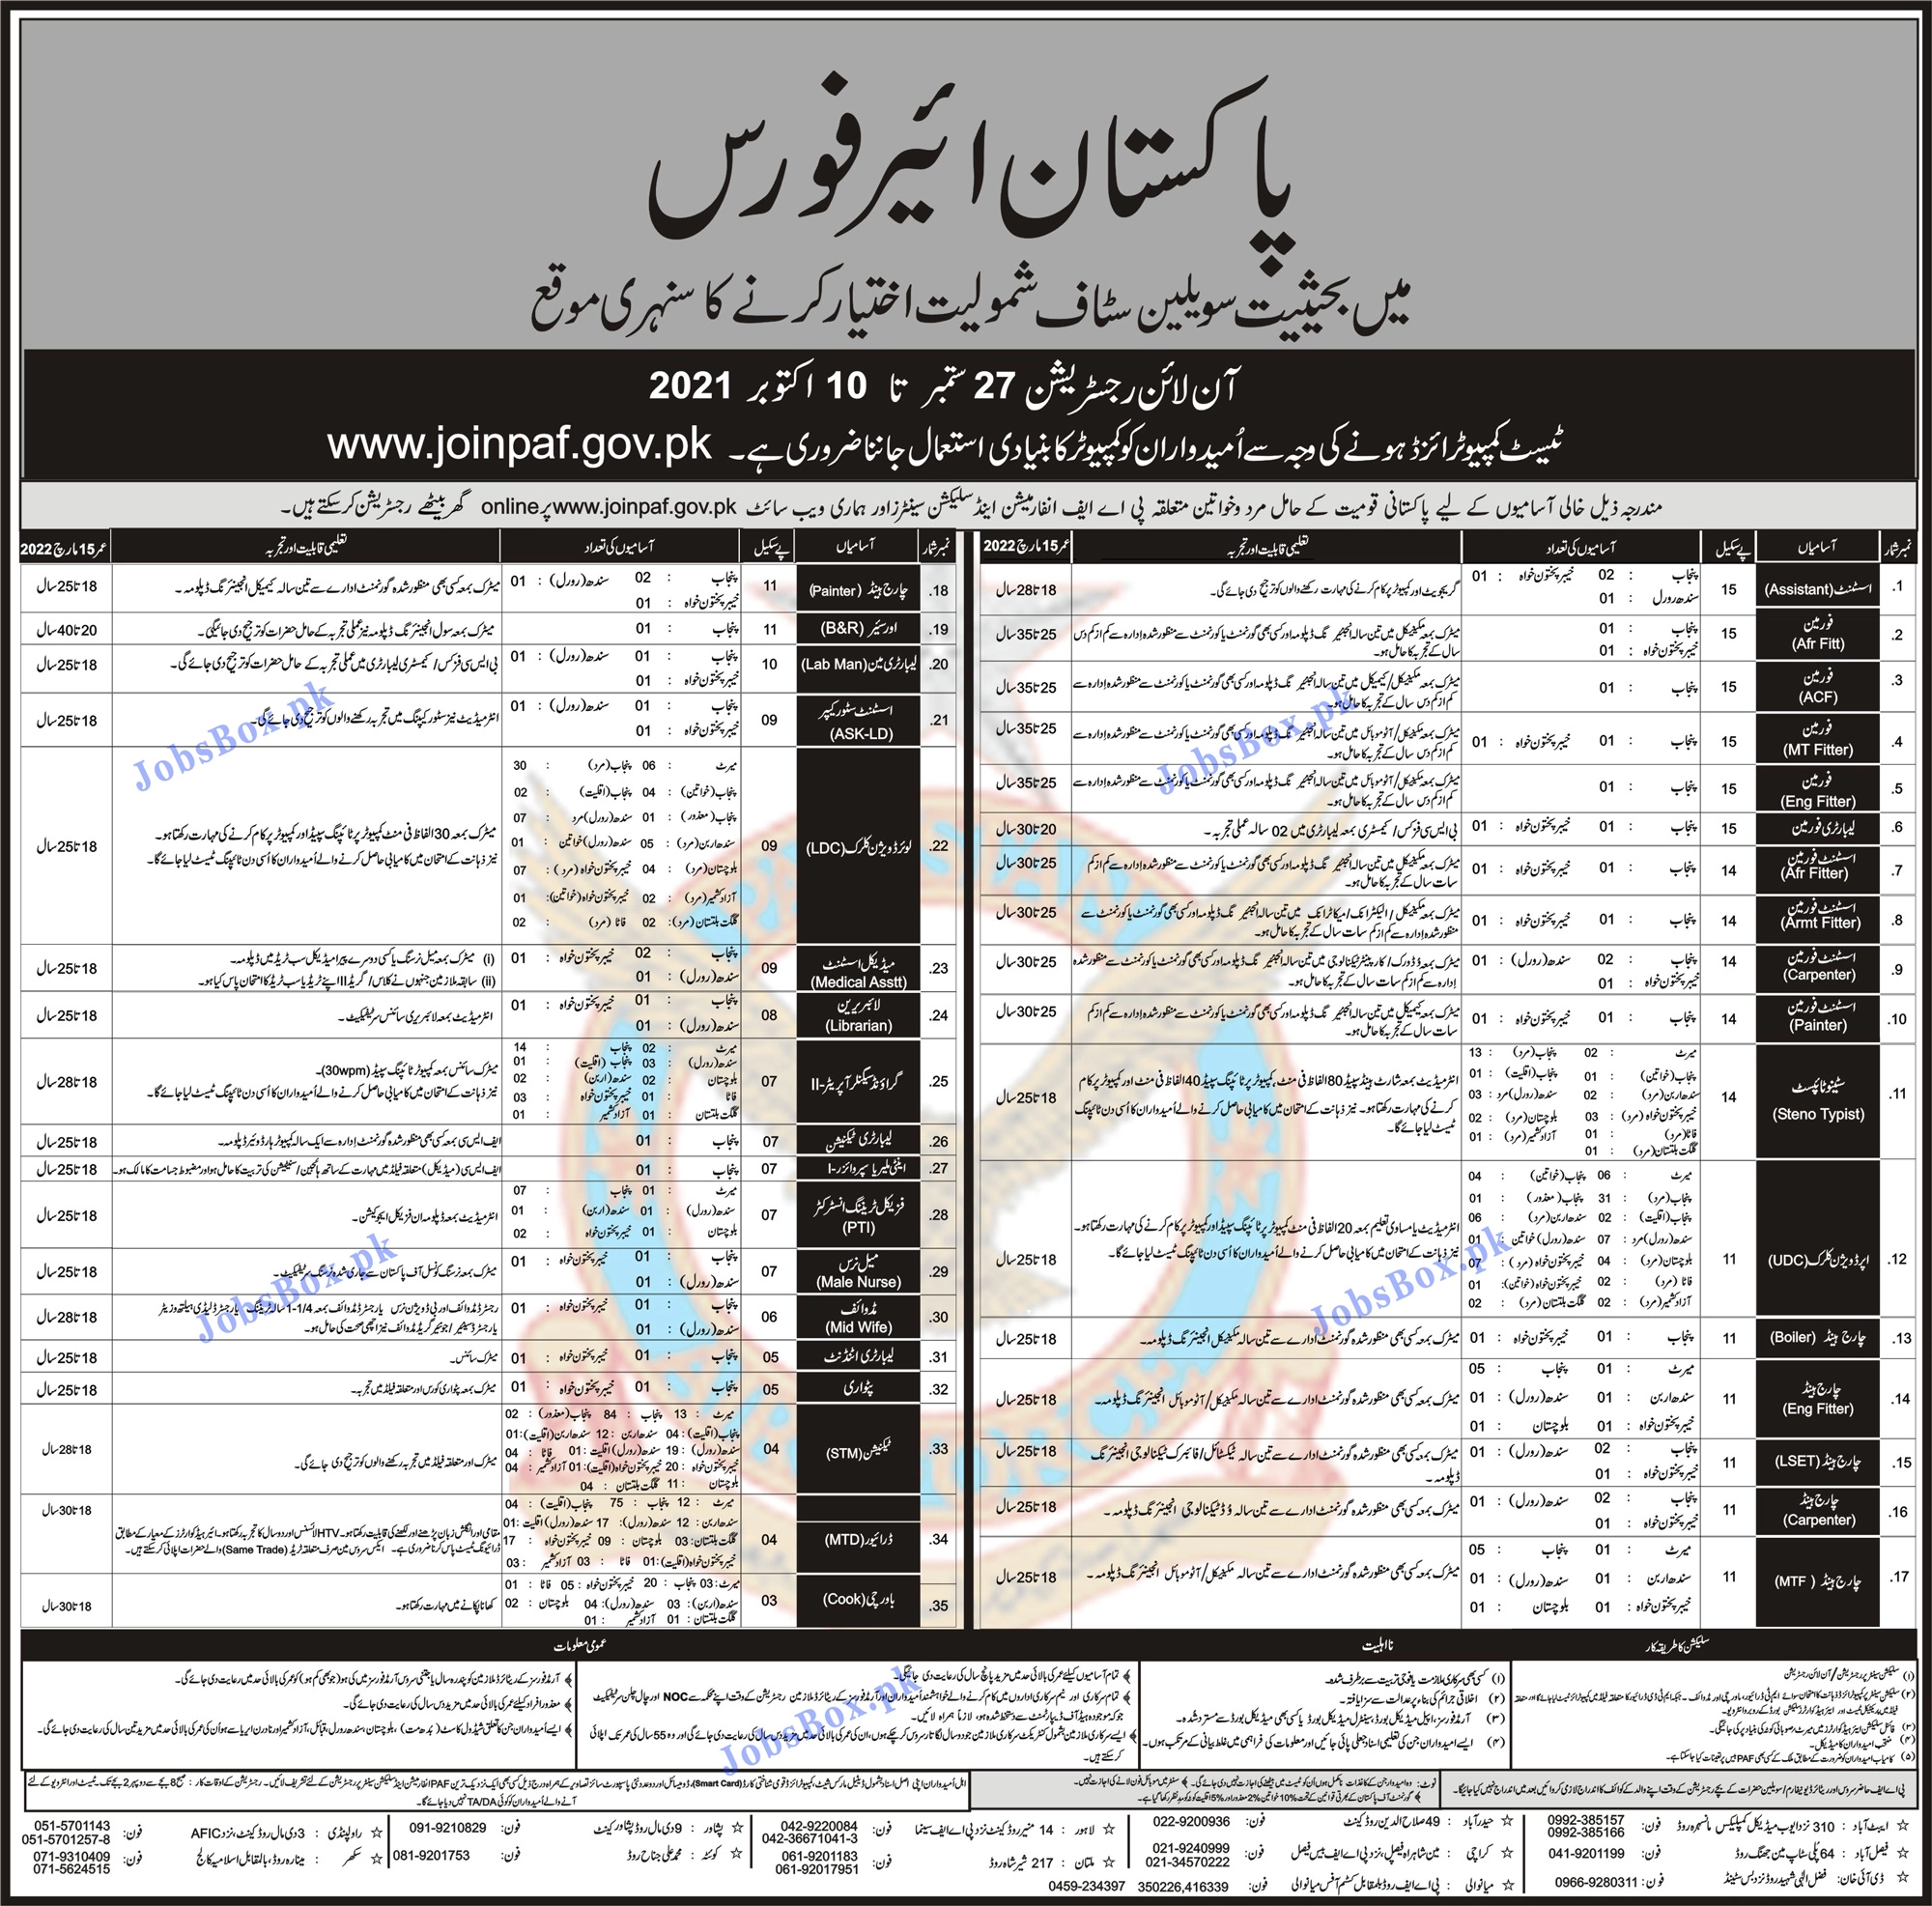 Join PAF Civilian Jobs 2021 - Online Registration www.joinpaf.gov.pk